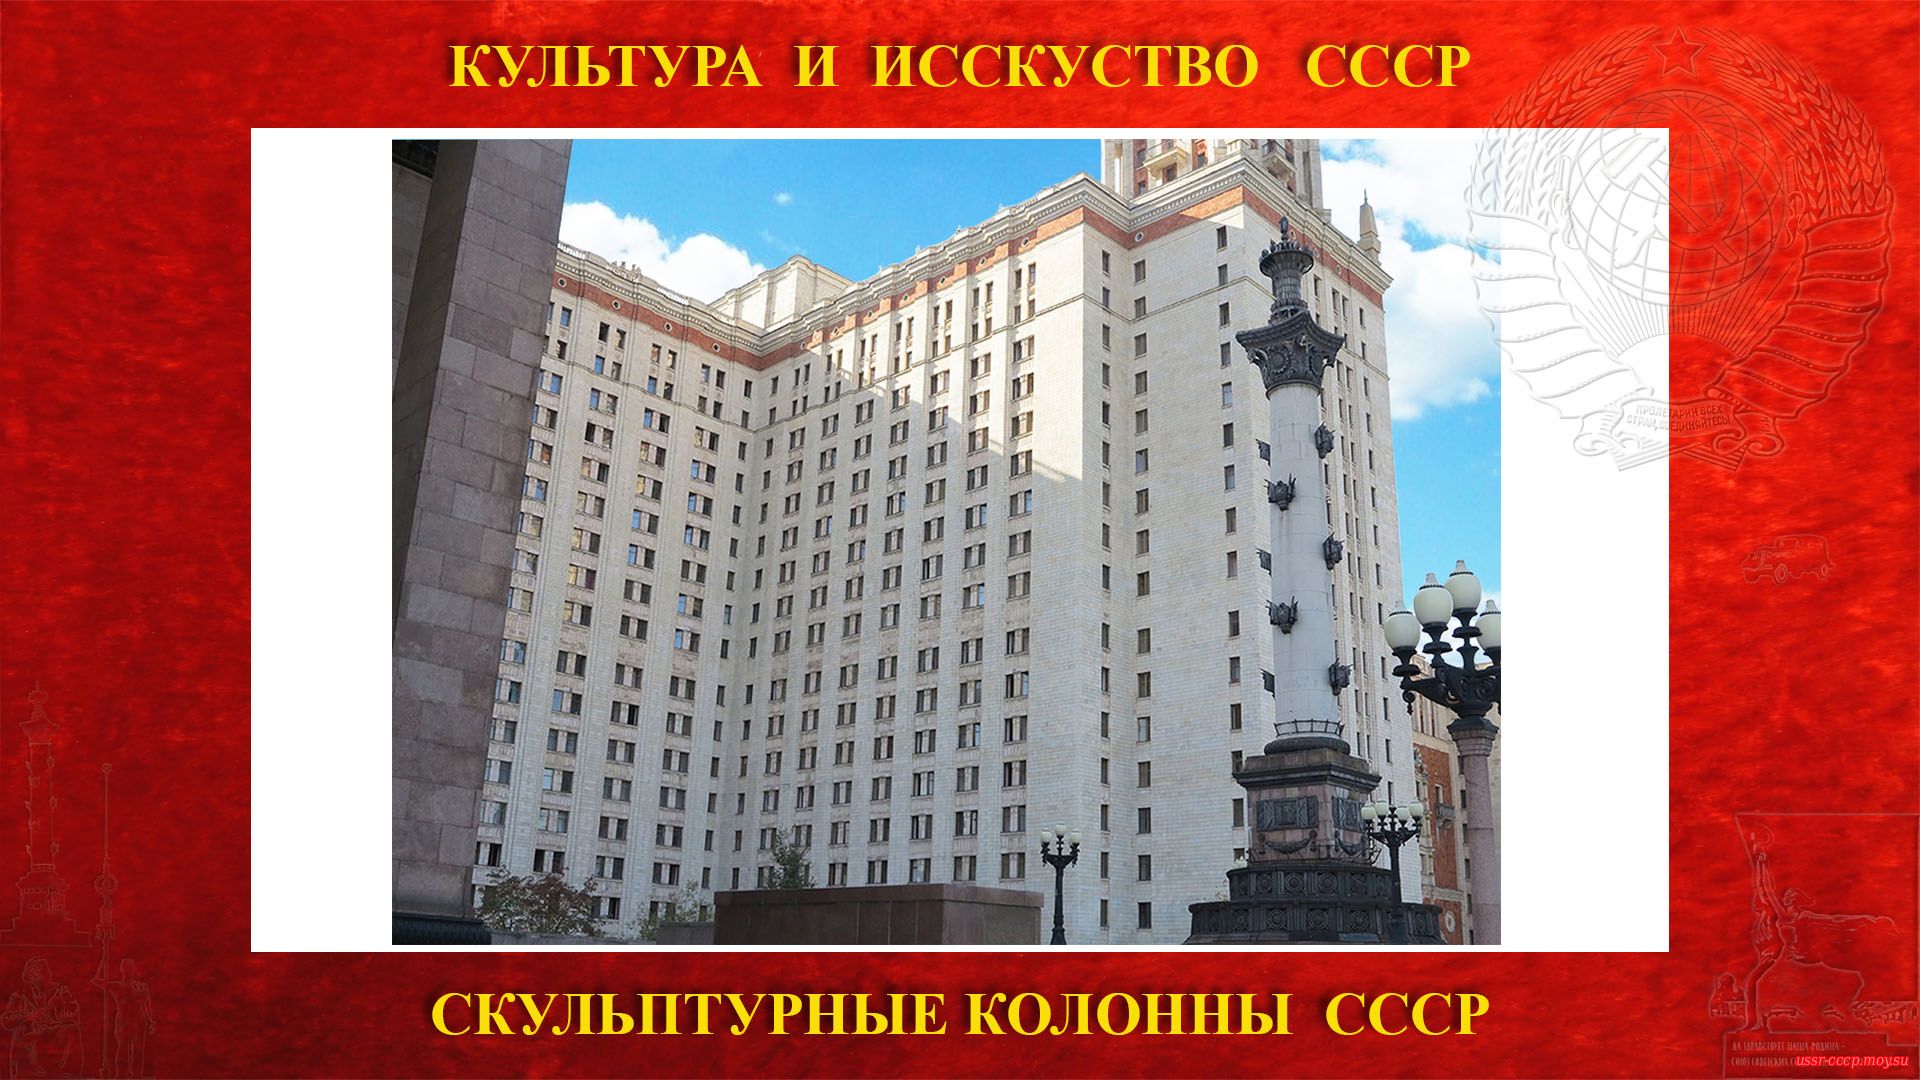 Скульптурные монументальные колонны «Советская наука» слрава от входа в ГЗ МГУ